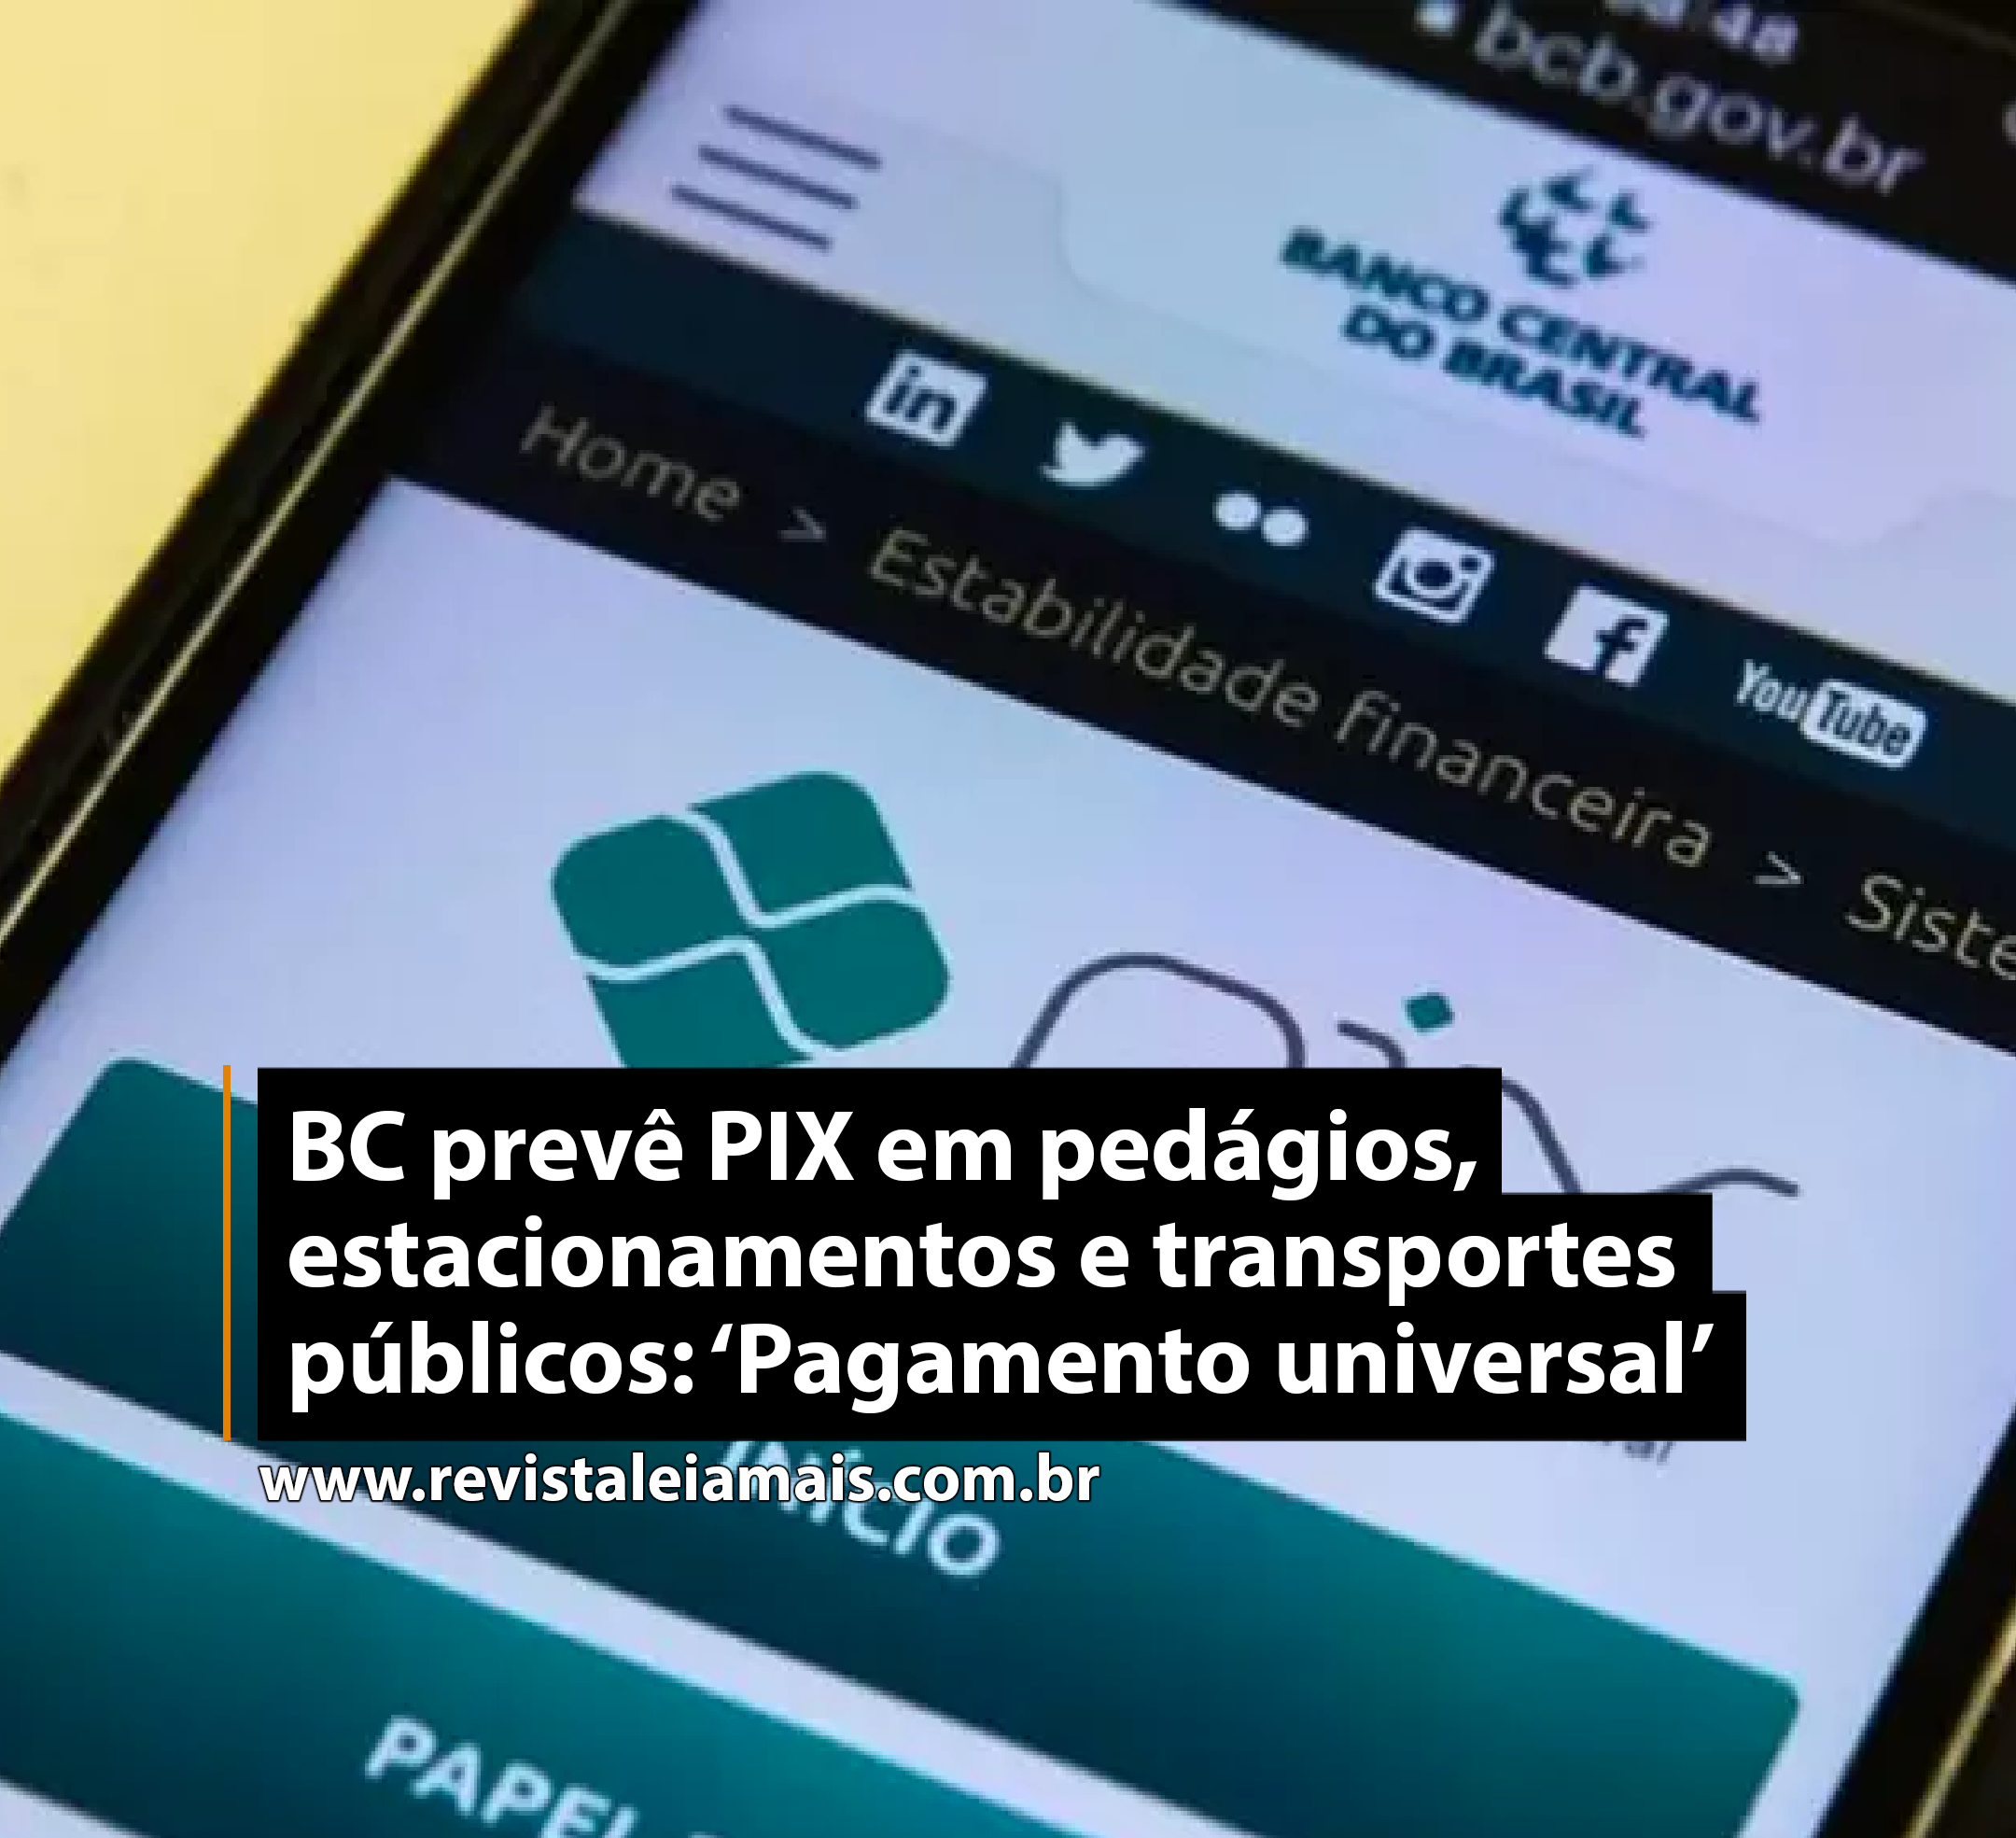 BC prevê PIX em pedágios, estacionamentos e transportes públicos: ‘Pagamento universal’